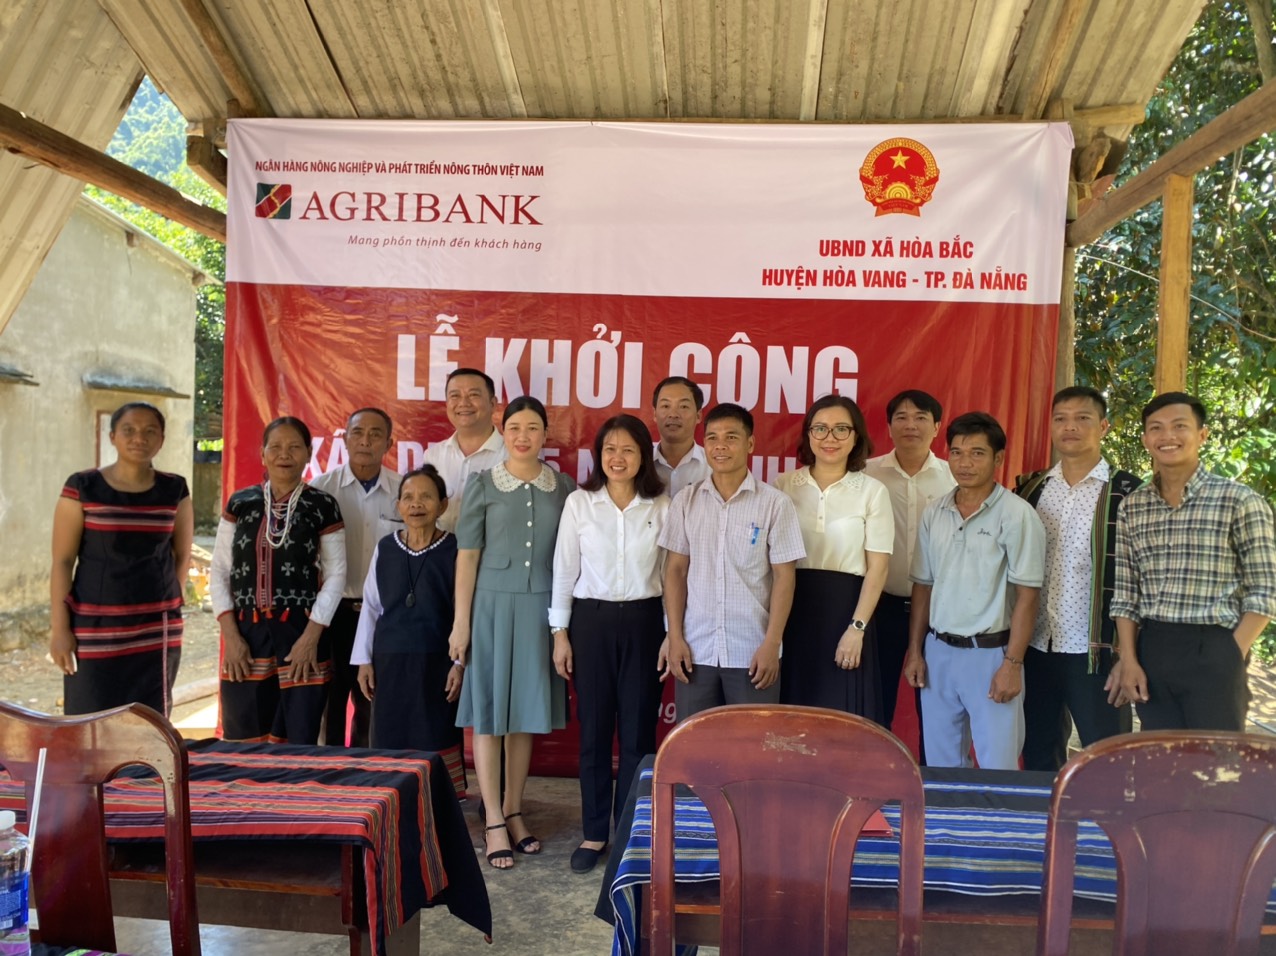 Đà Nẵng: Agribank tài trợ 500 triệu đồng xây dựng 5 nhà tình nghĩa cho người đồng bào Cơ Tu - Ảnh 5.